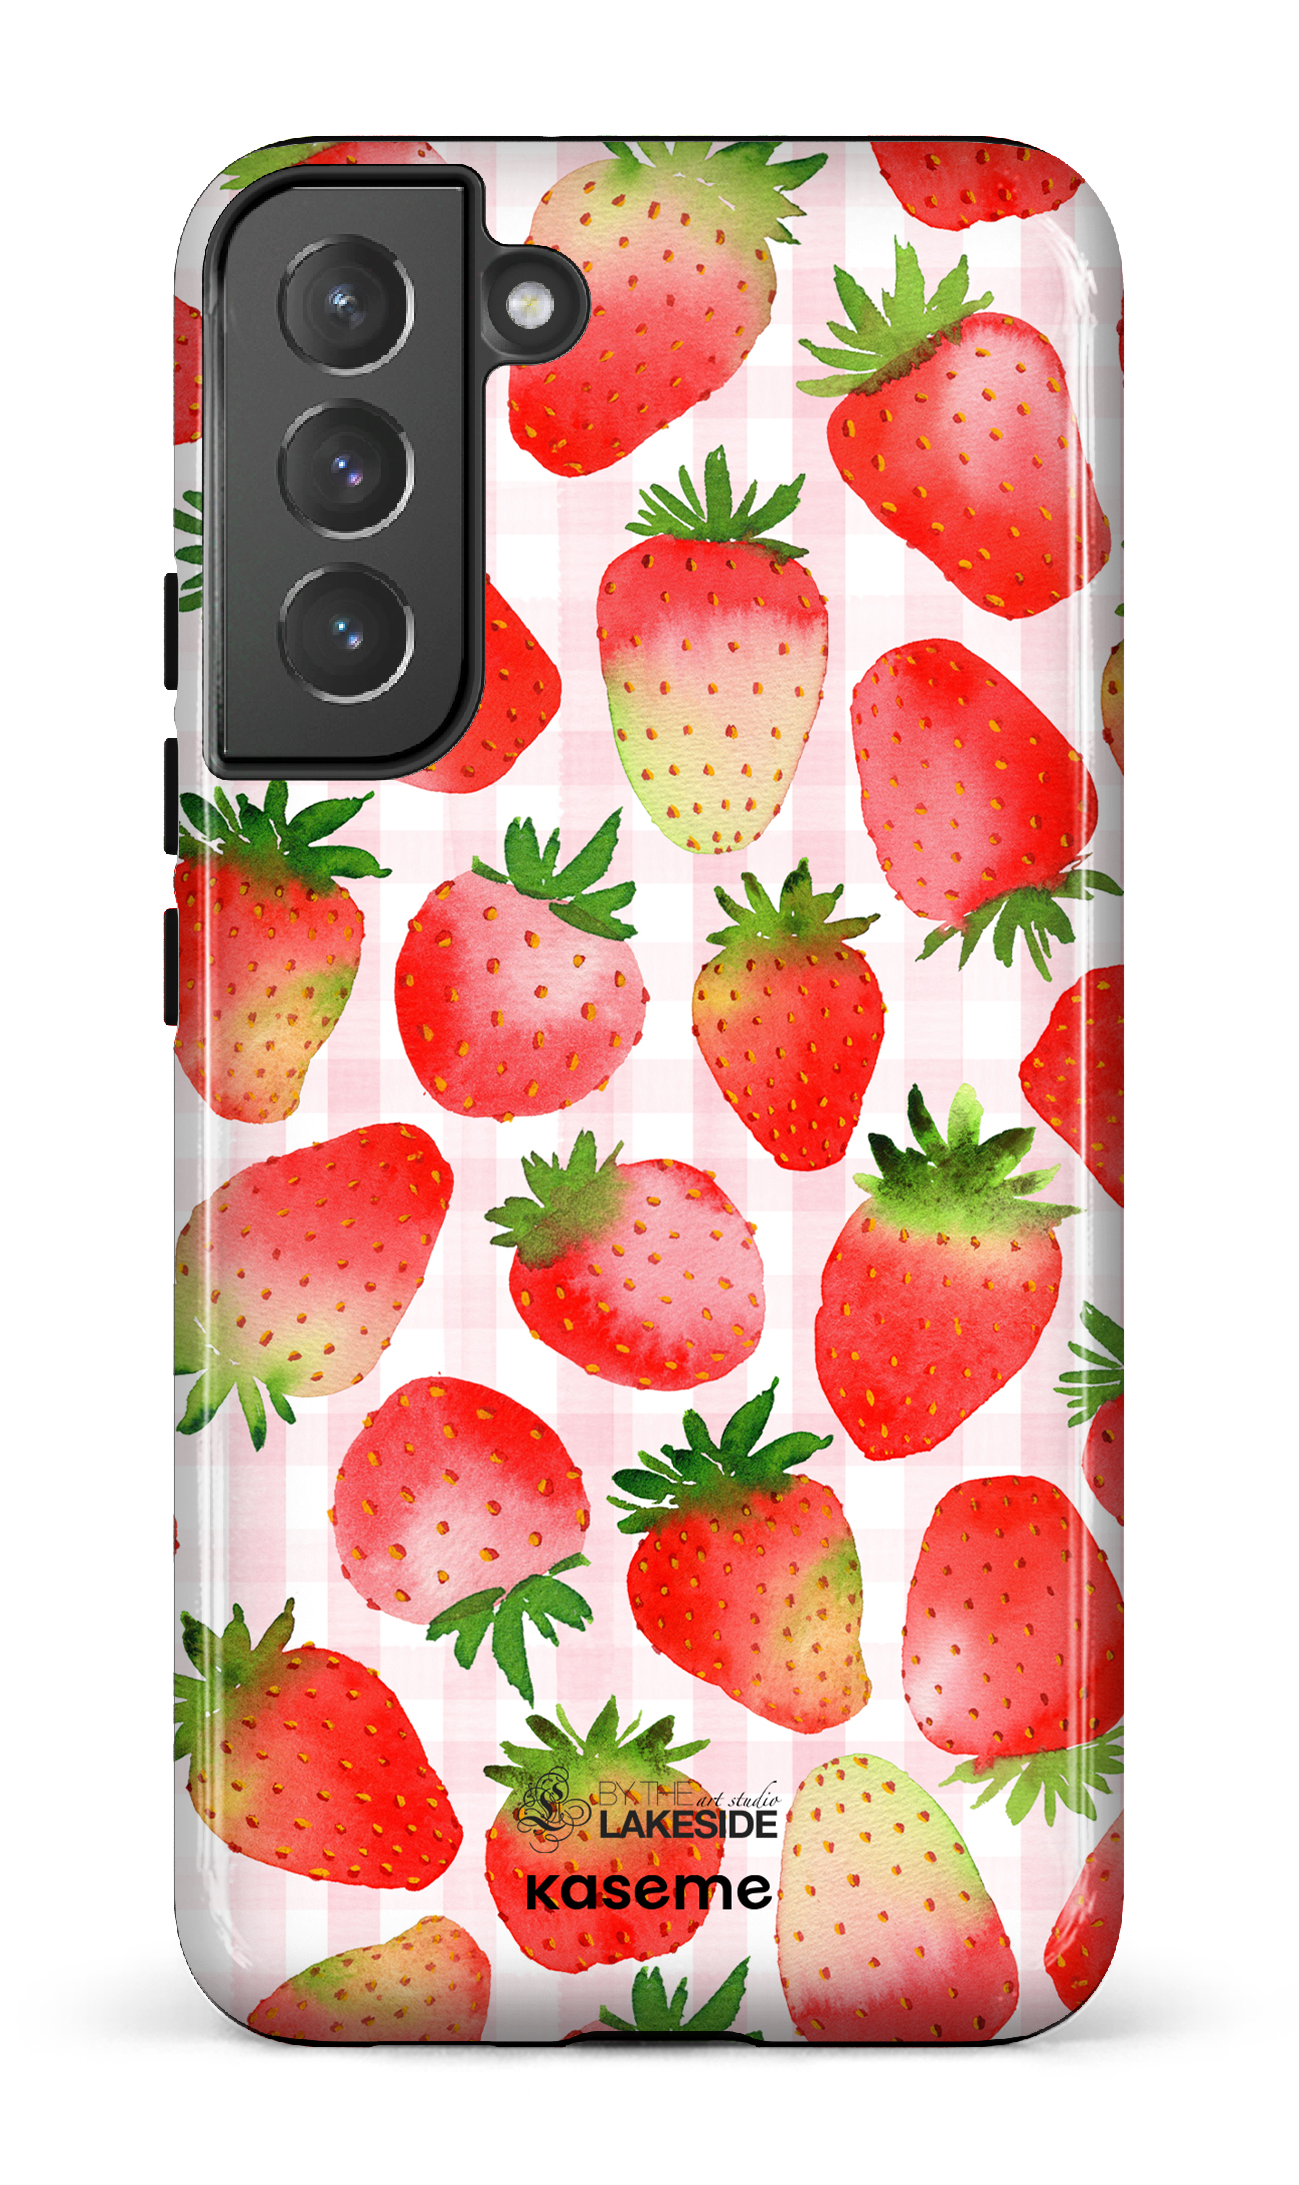 Strawberry Fields by Pooja Umrani - Galaxy S22 Plus